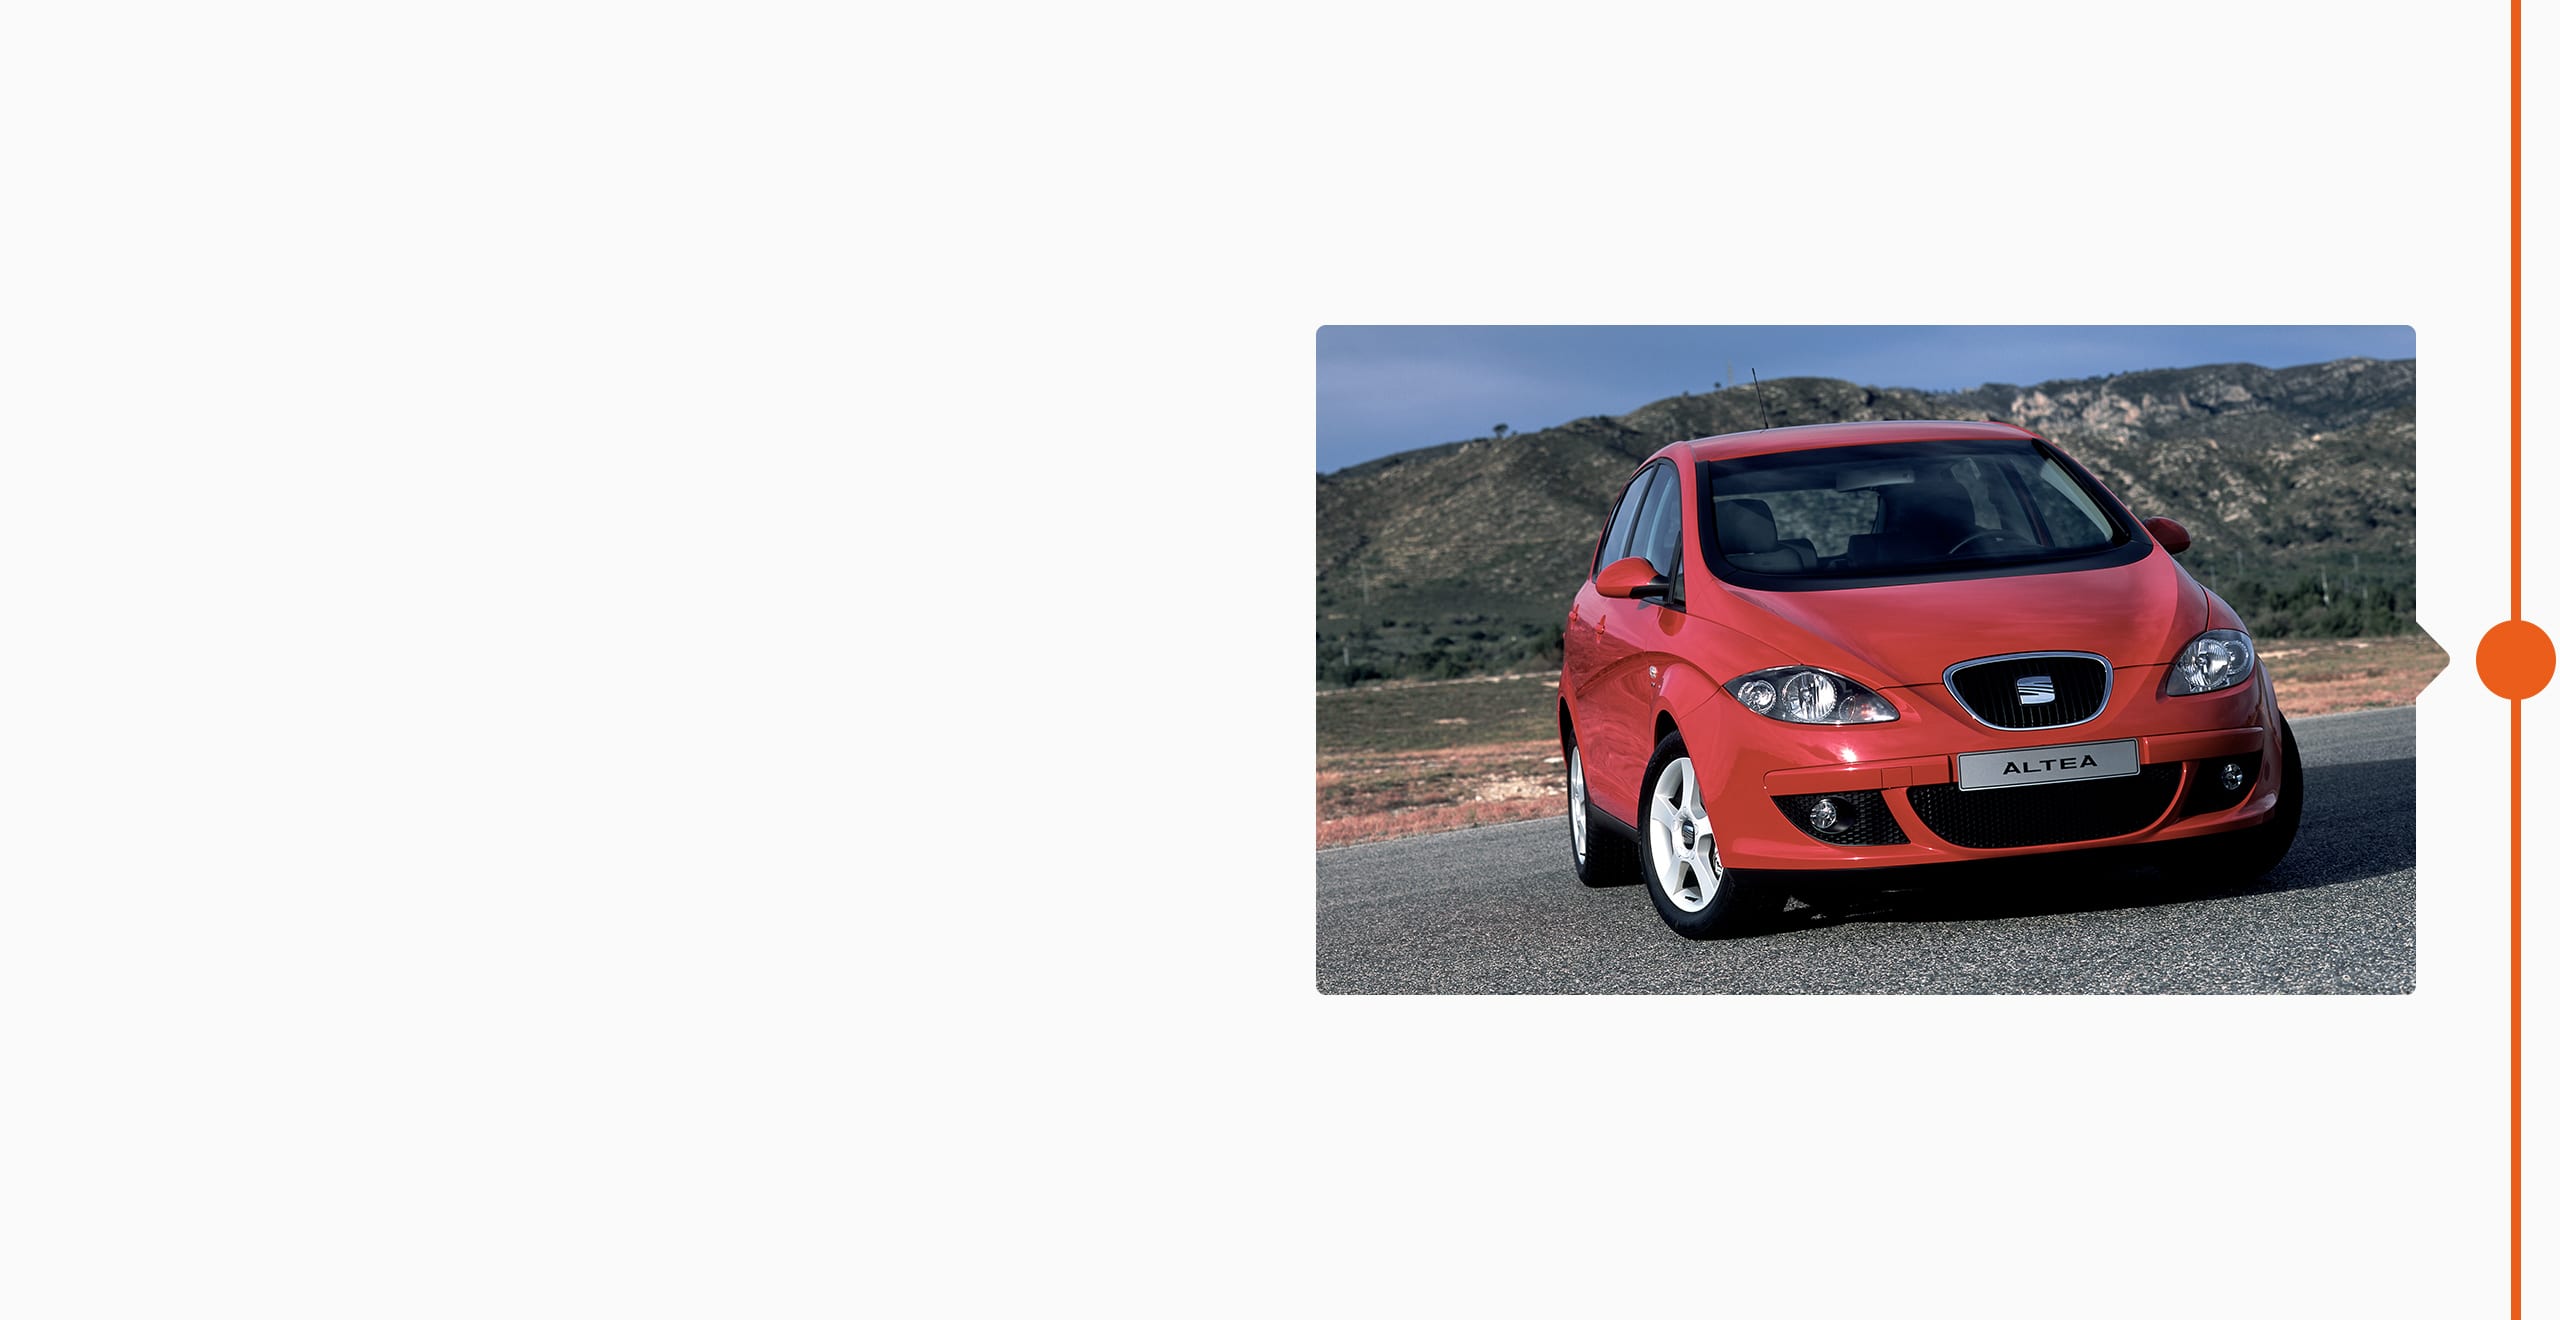 Histoire de la marque SEAT 2004 - SEAT Altea fait ses débuts au Salon de Genève